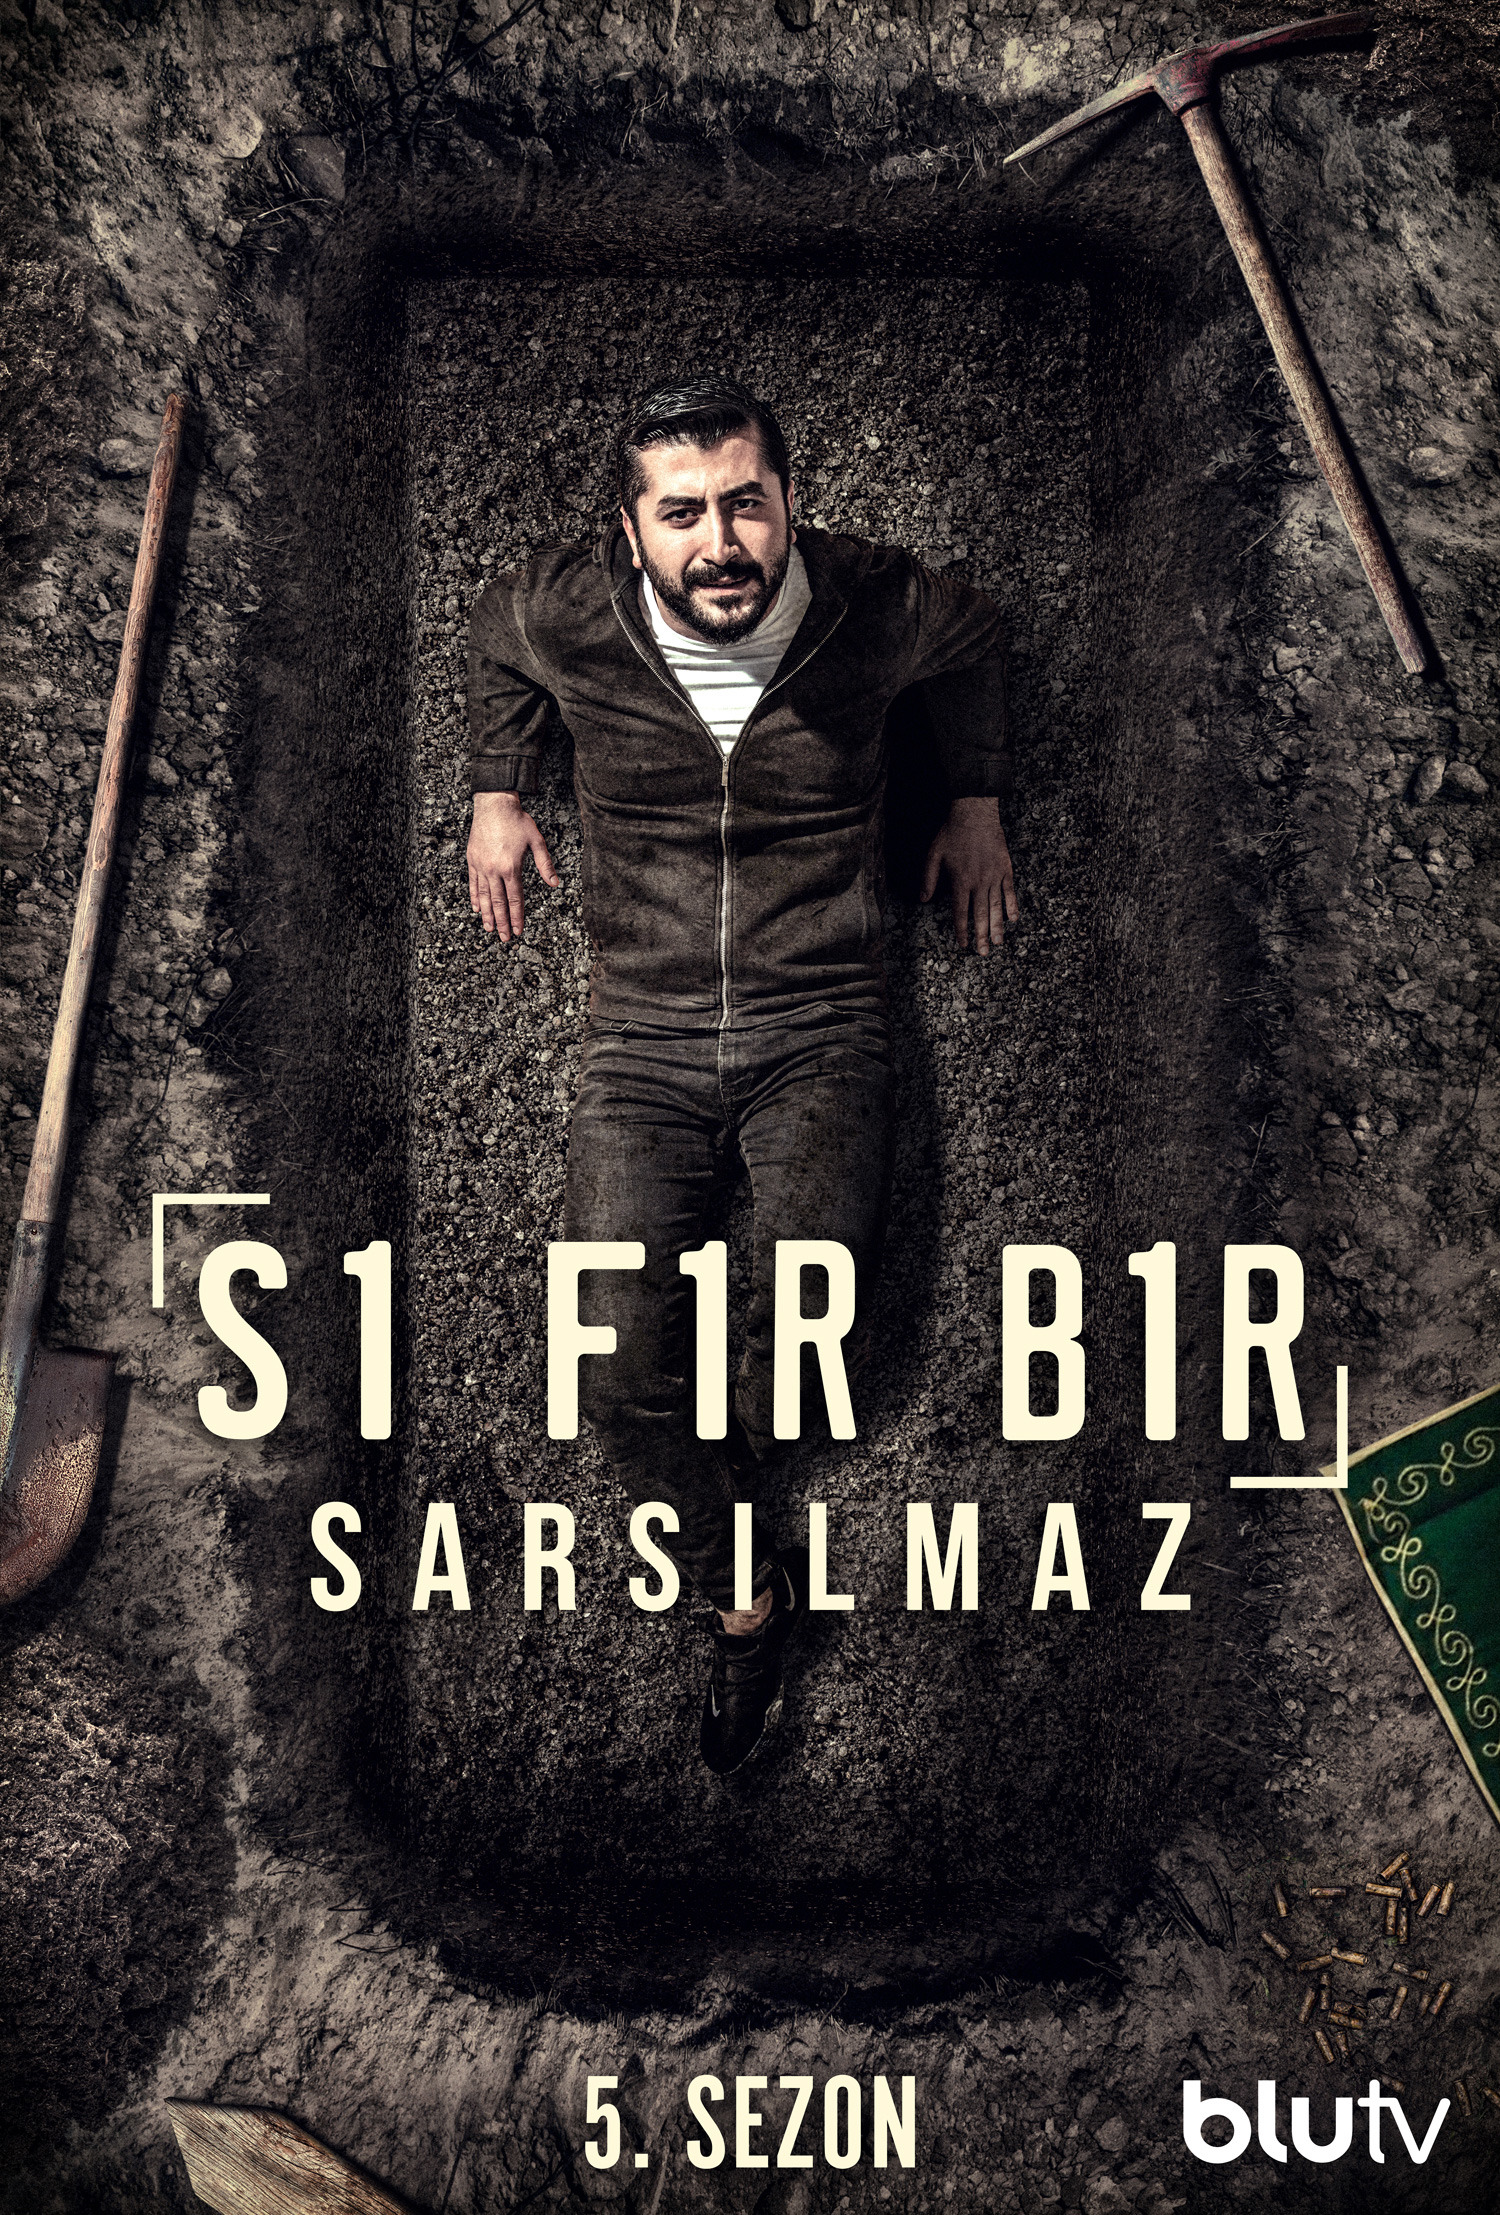 Mega Sized TV Poster Image for Sifir Bir (#19 of 23)